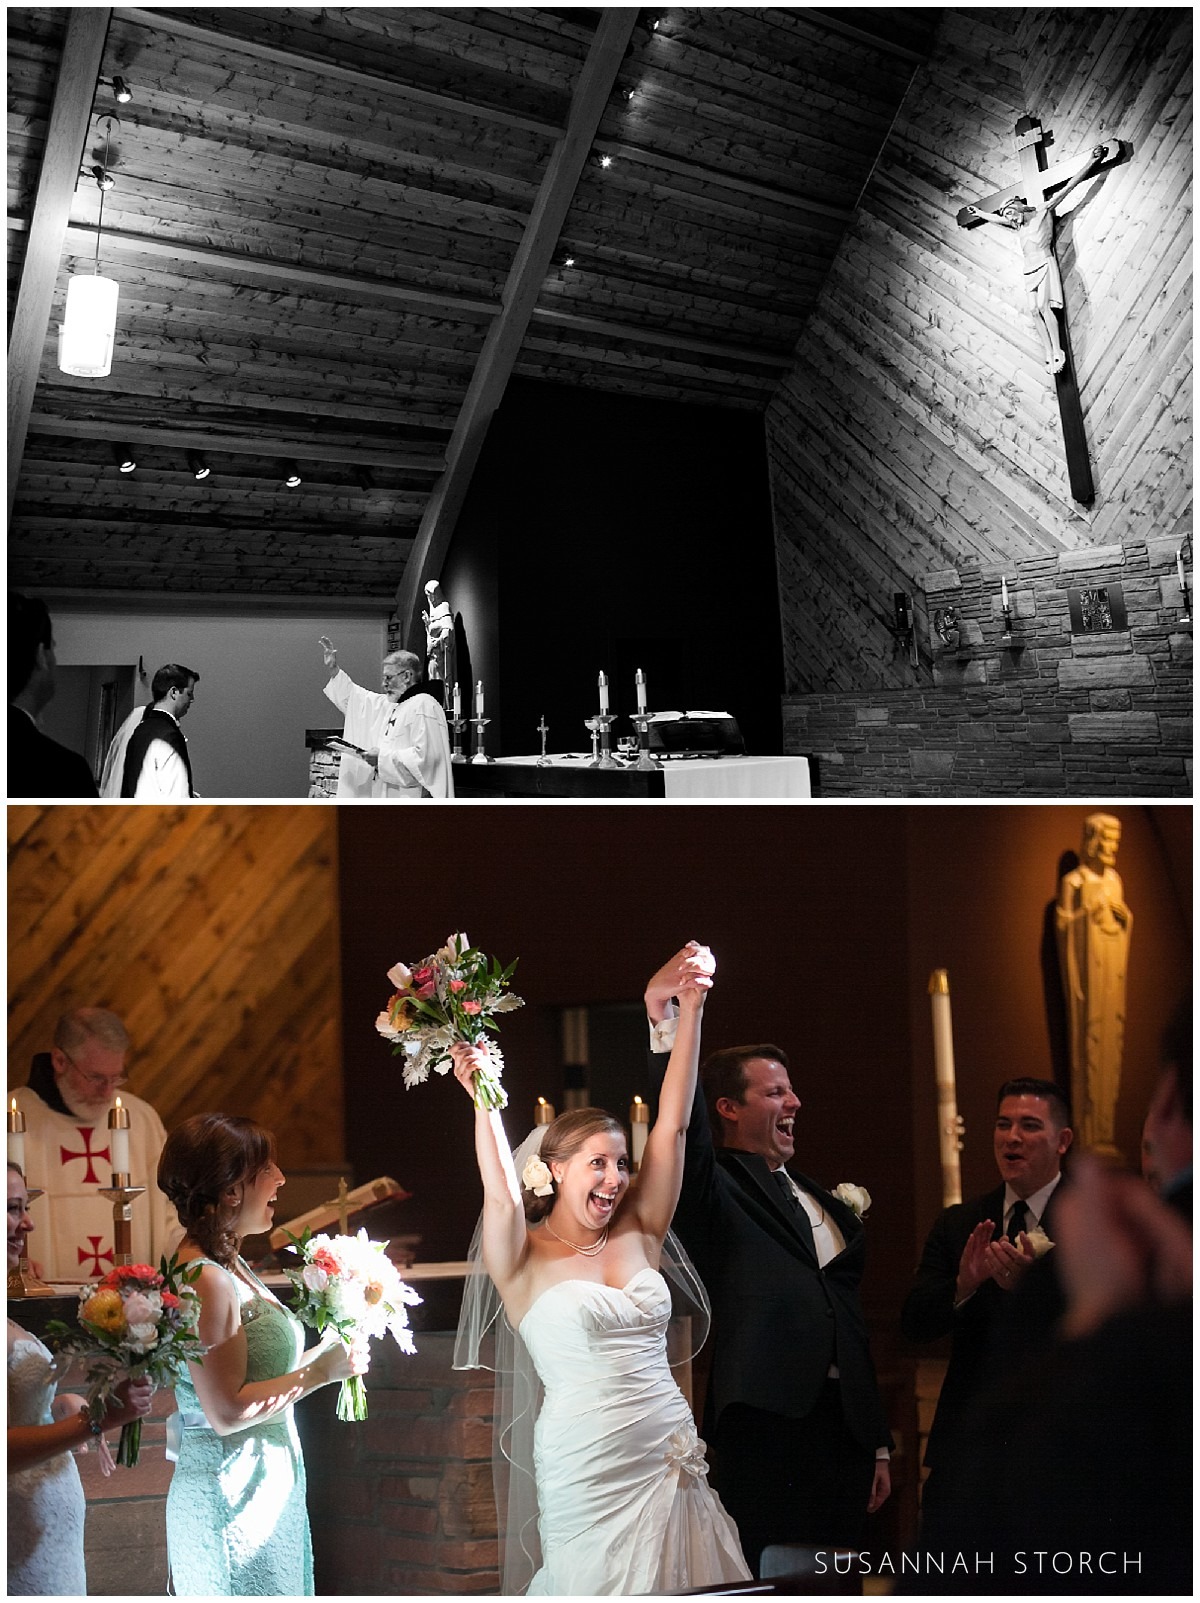 images of a catholic wedding ceremony